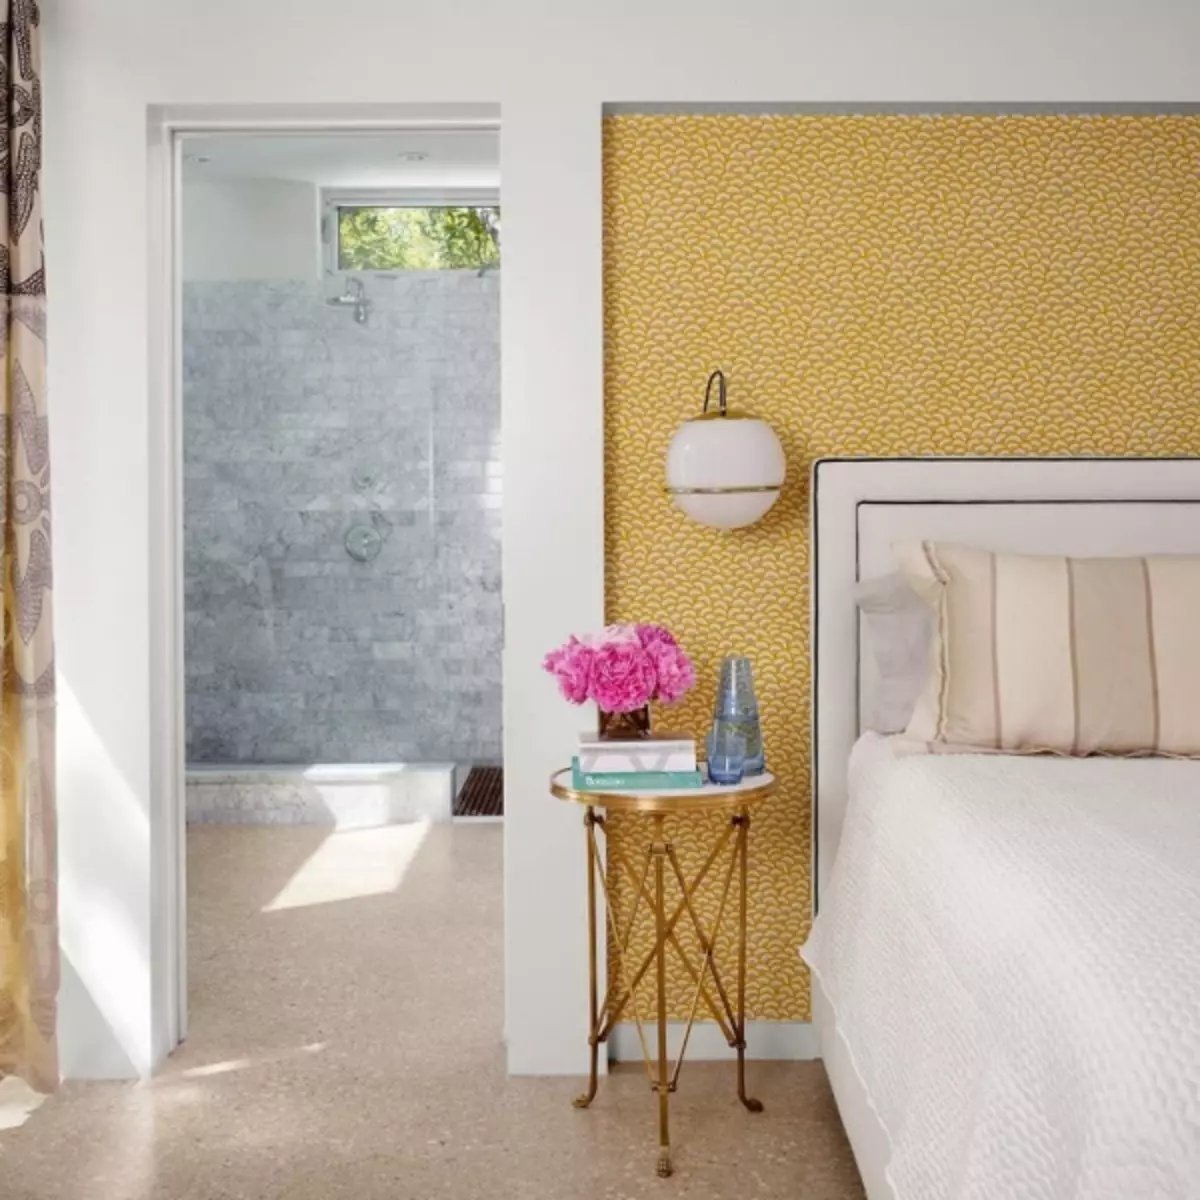 Hình nền trong thiết kế ảnh phòng ngủ 2019: Kết hợp, thời trang 2019, ý tưởng hiện đại, trong một phòng ngủ nhỏ, phong cách trong nội thất phòng ngủ, bộ sưu tập mới, video